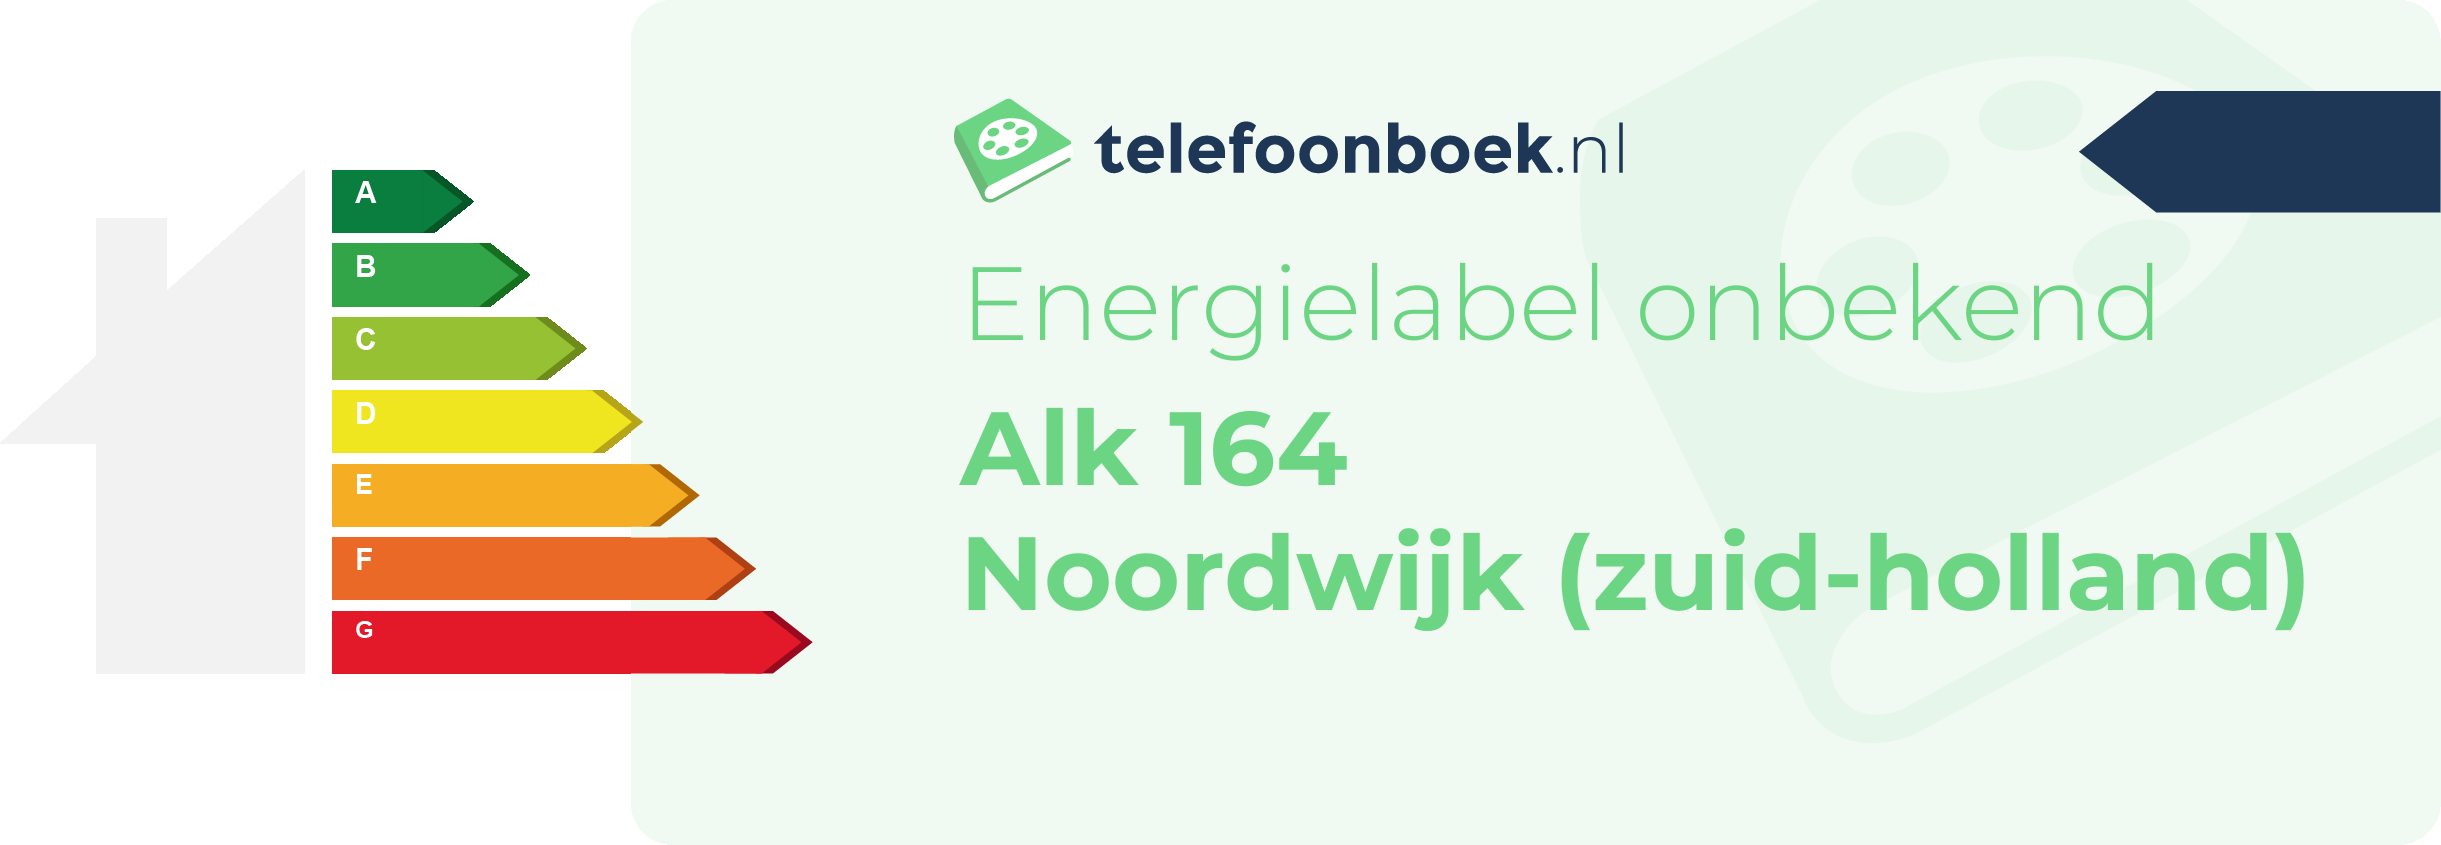 Energielabel Alk 164 Noordwijk (Zuid-Holland)